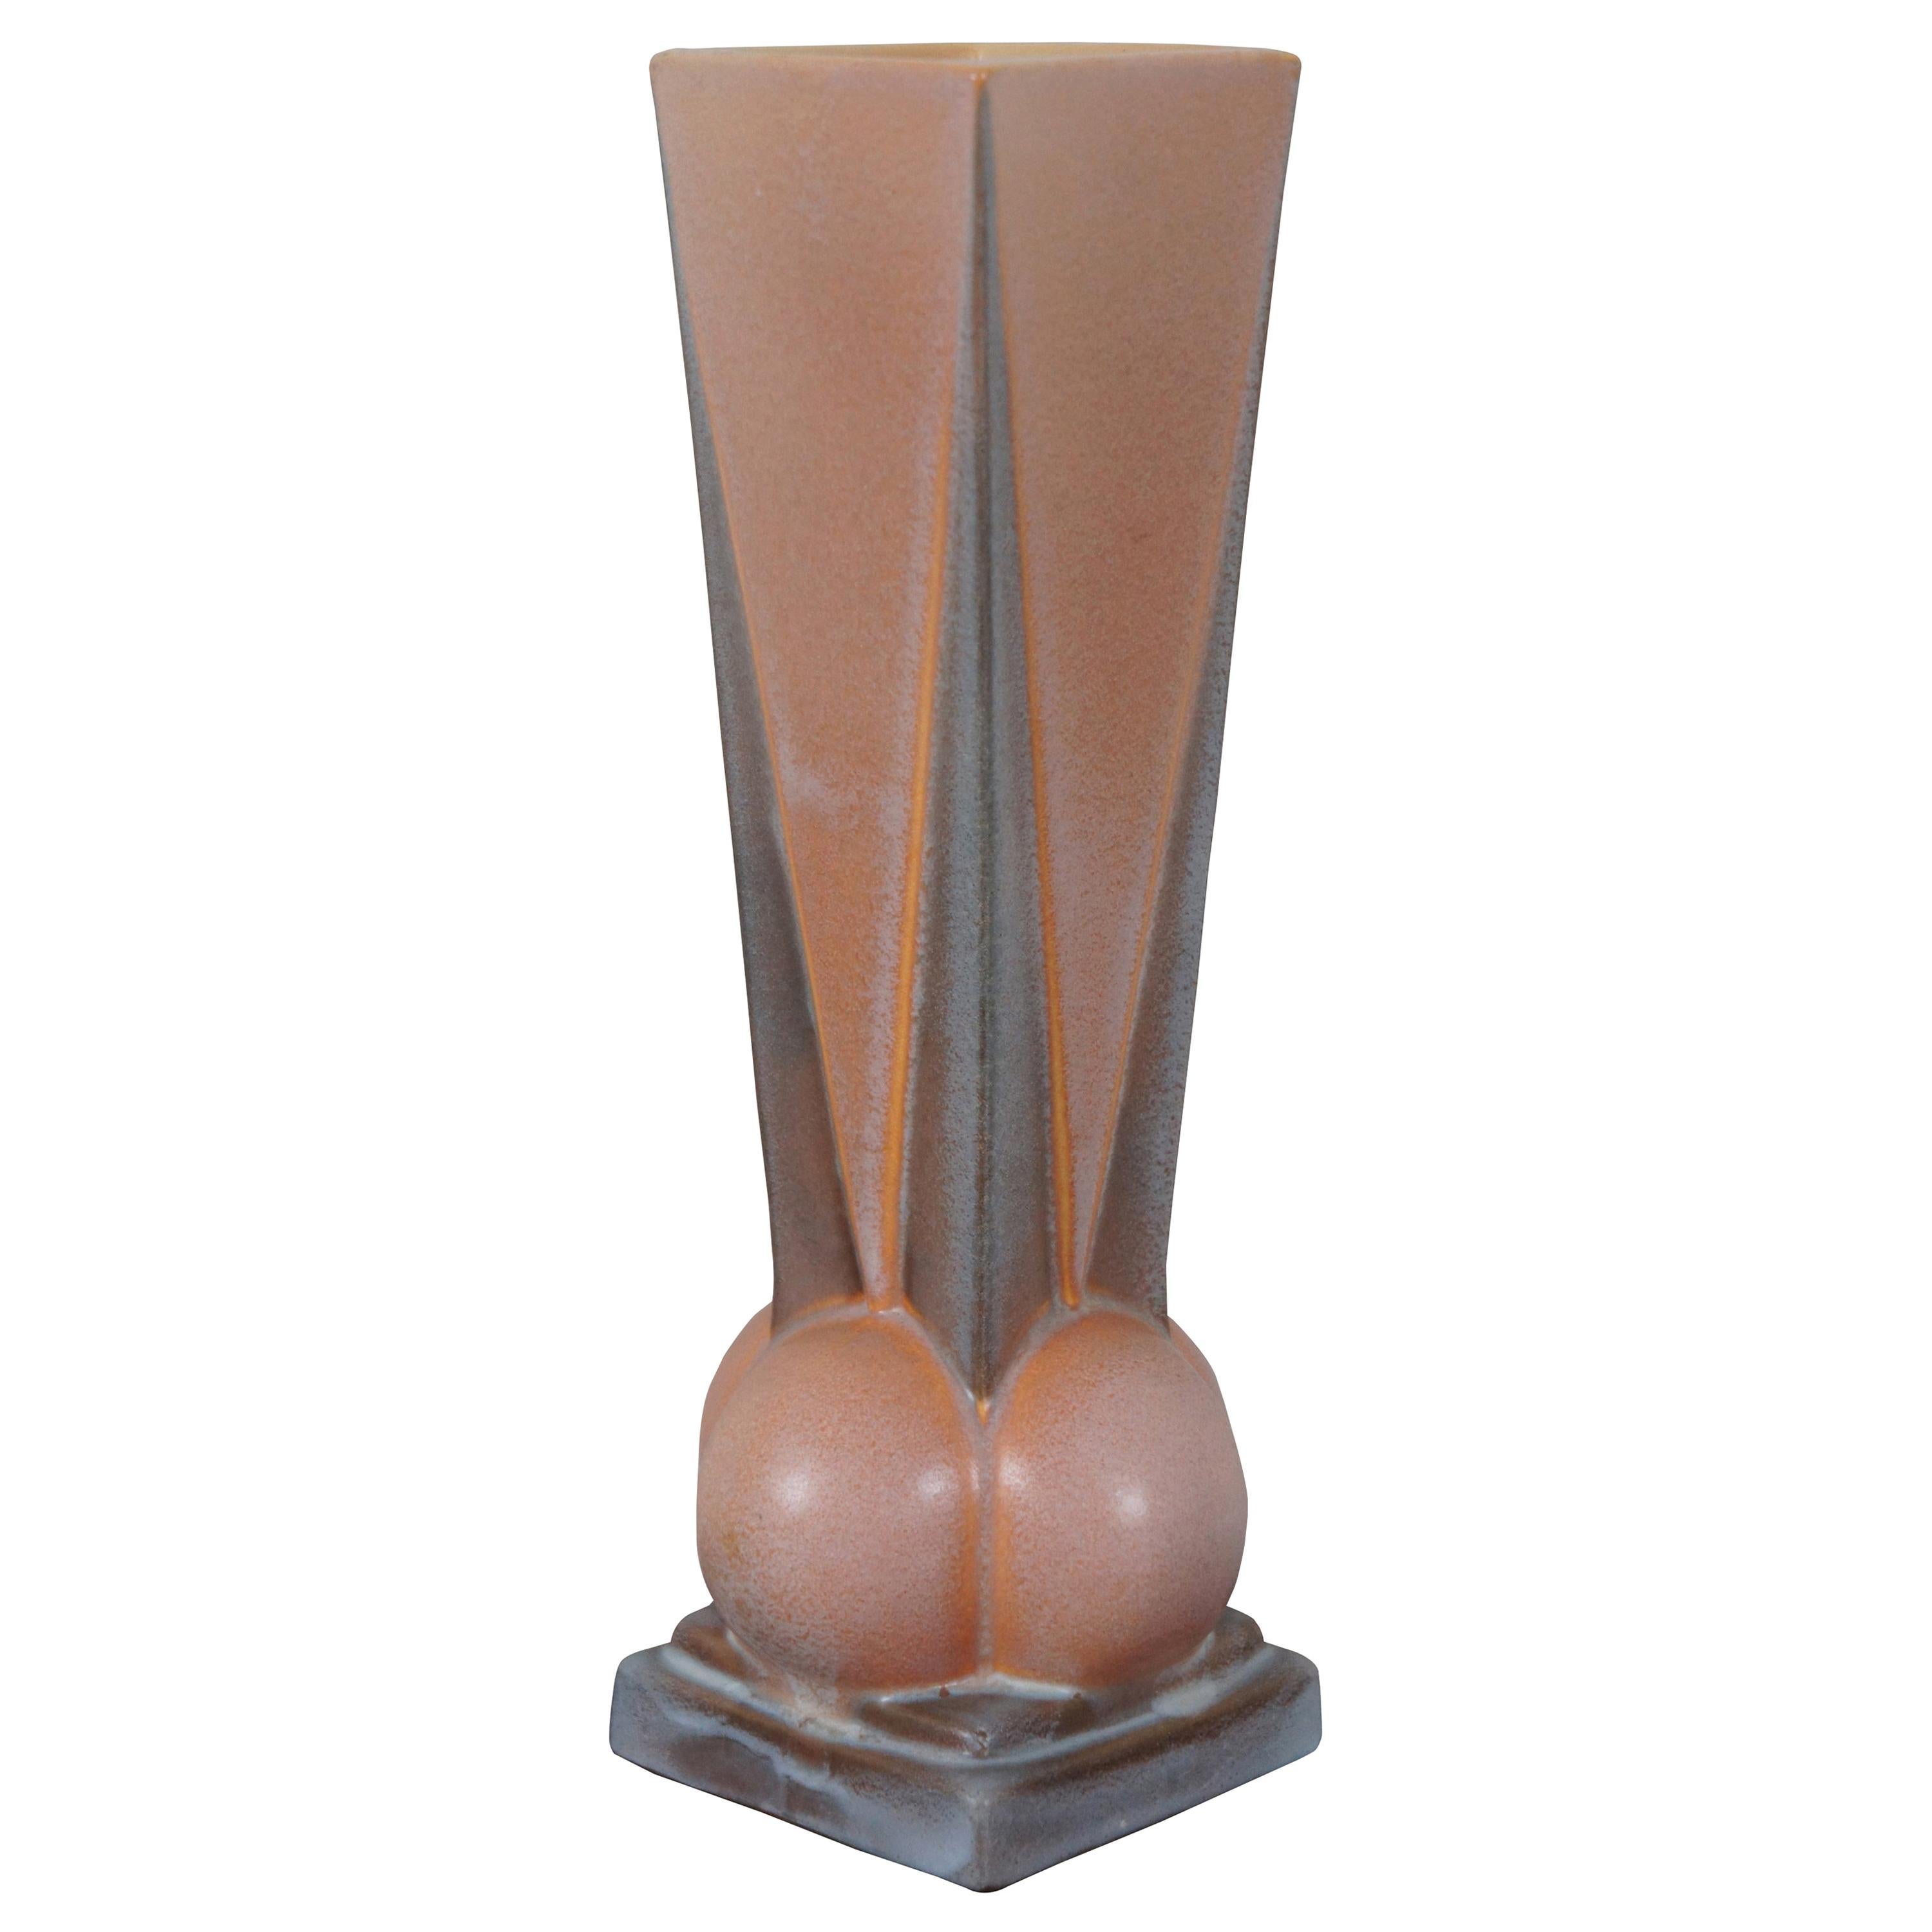 1924 Antique Art Deco Roseville Futura Pottery Four Ball Flower Vase 393-12 